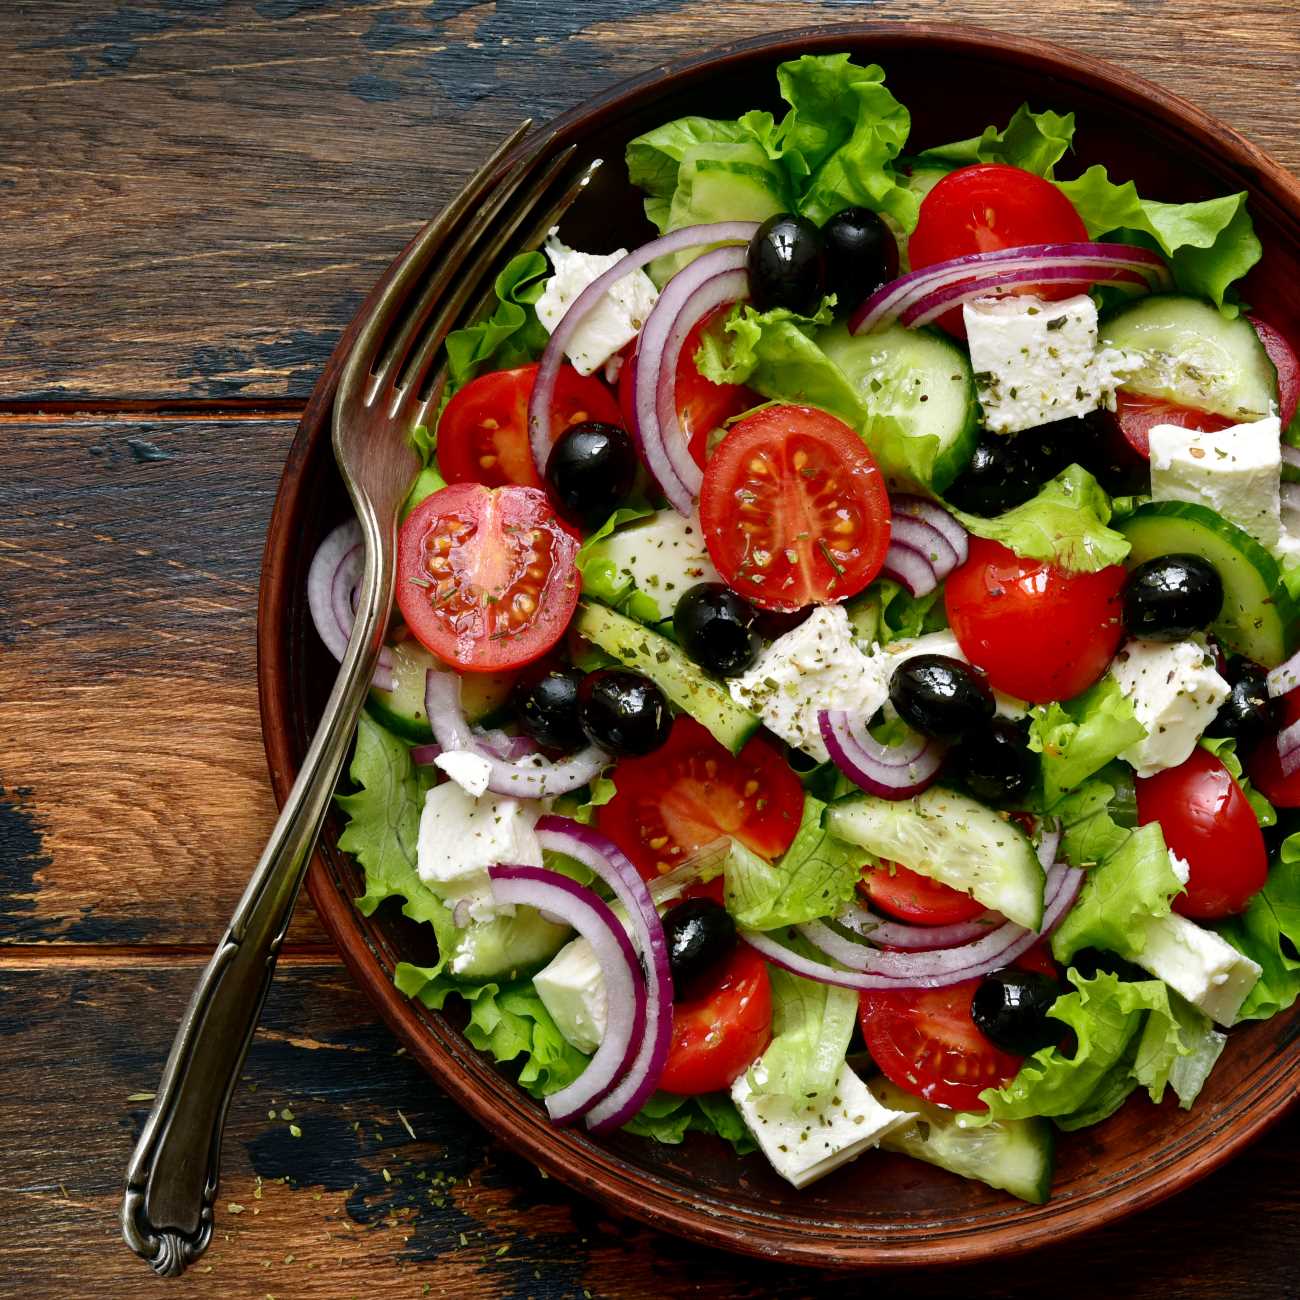 Griechischer Salat wird in einer braunen Schüssel auf Holzuntergrund gezeigt.